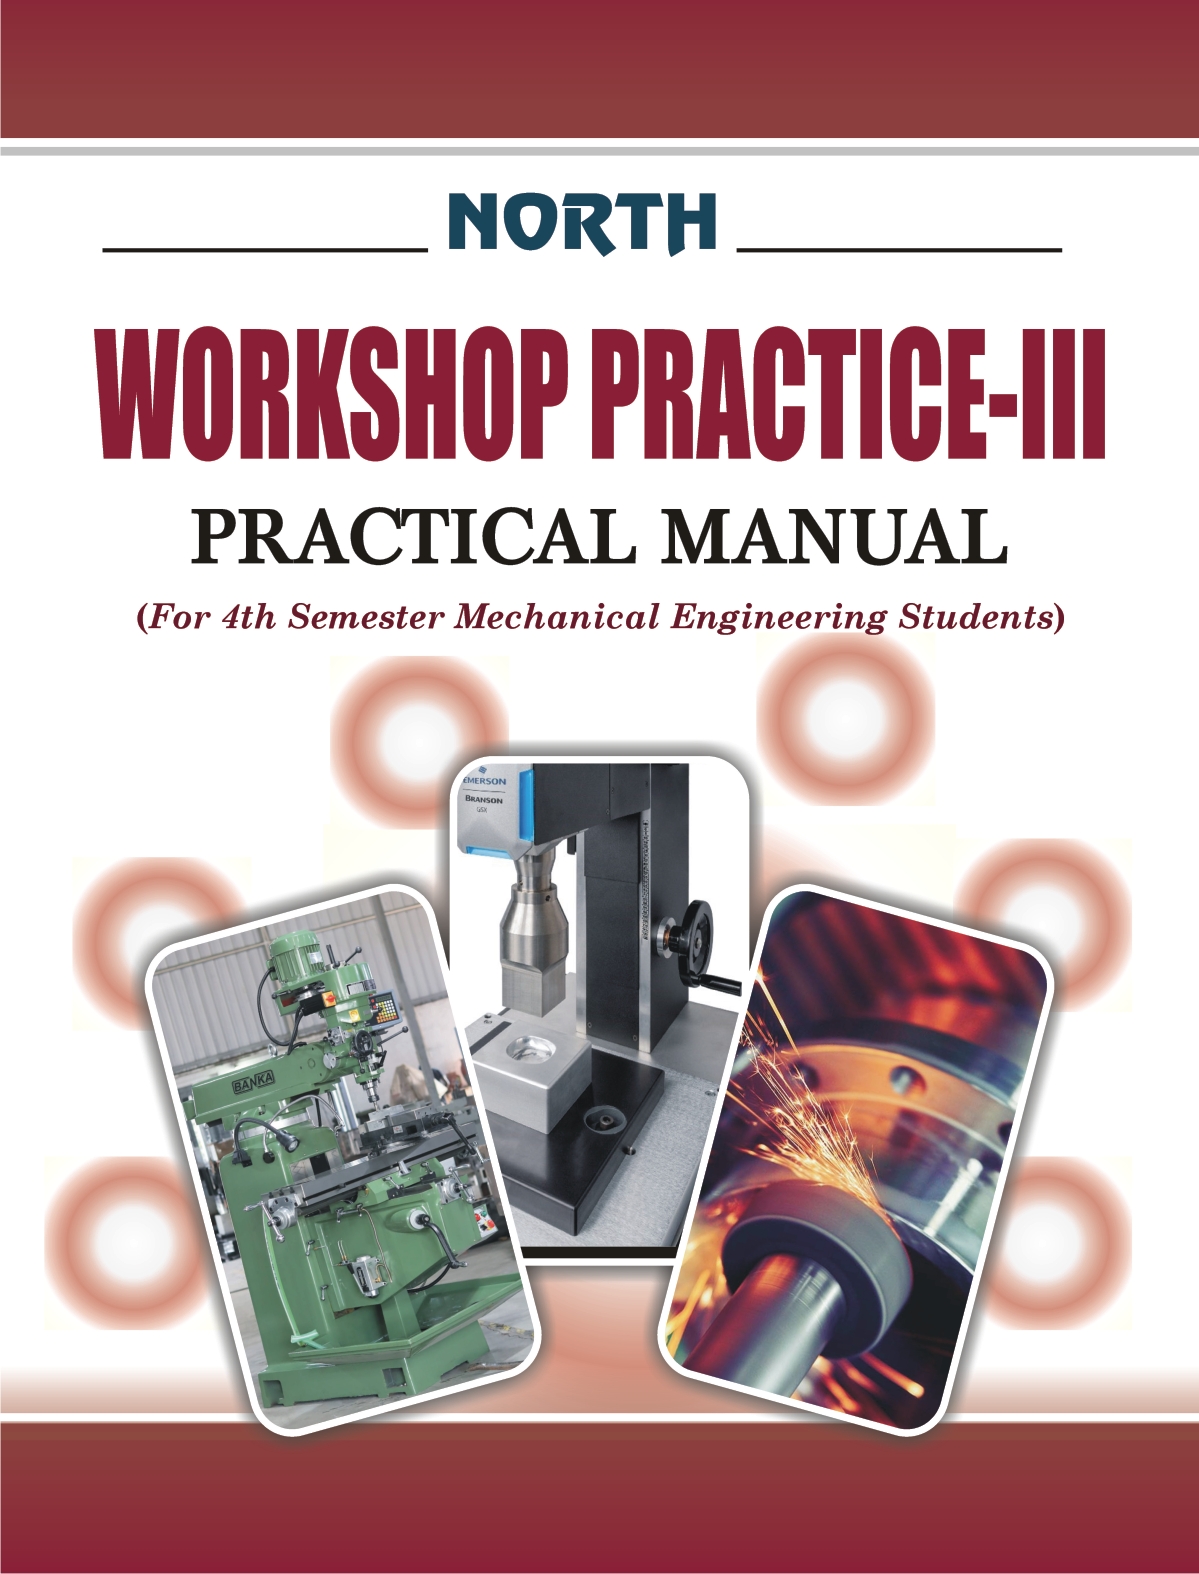 Workshop Practice-III